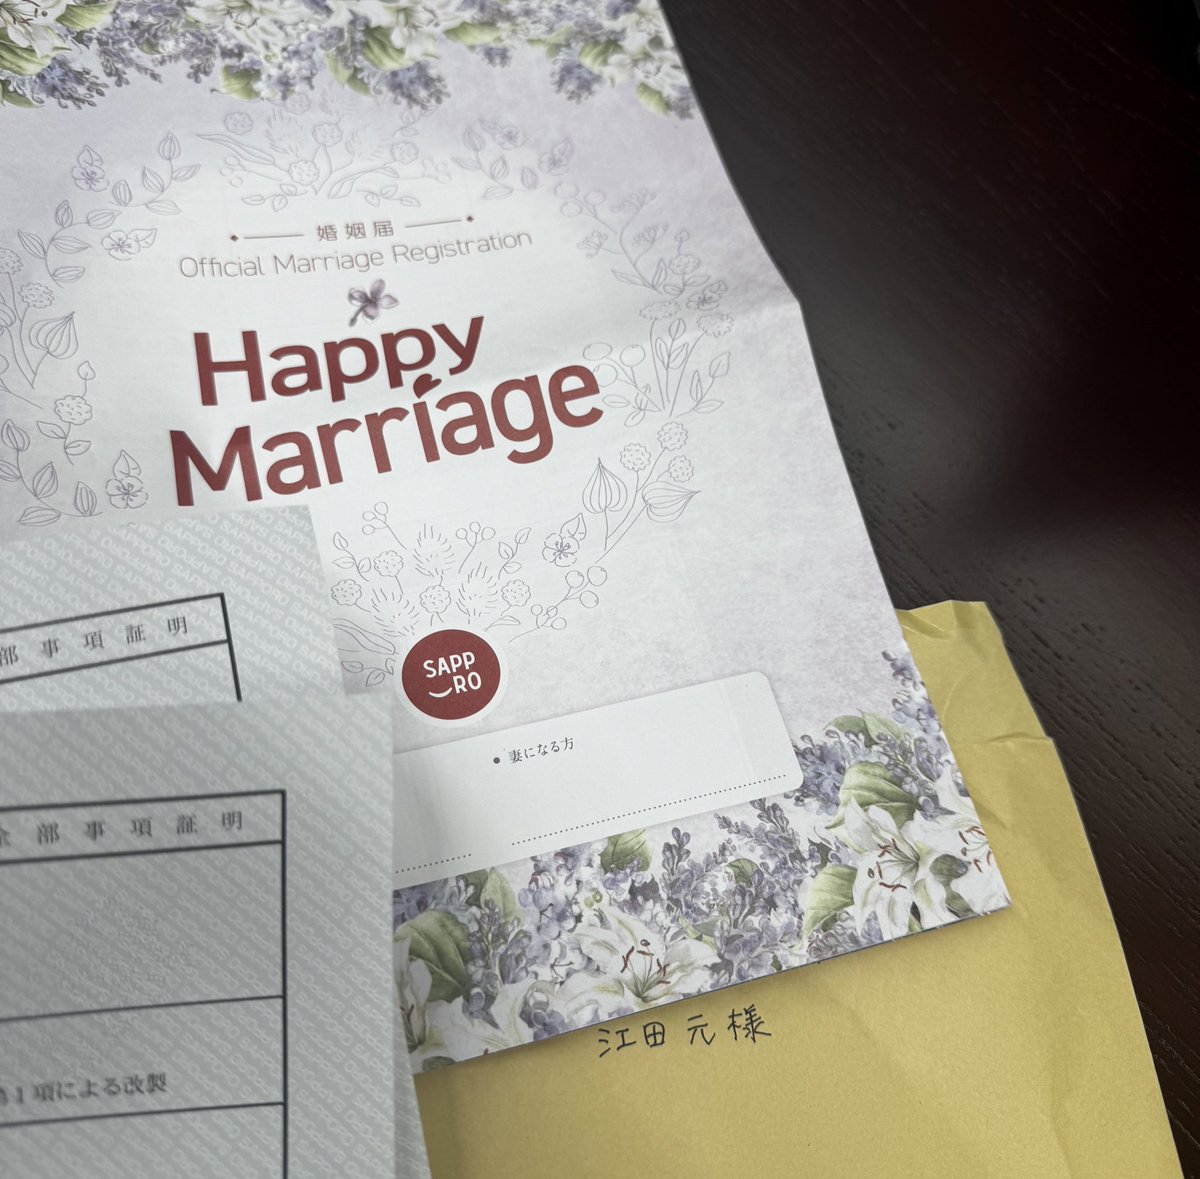 知らない人から家にガチ婚姻届が届いた…

送ってきた人の本籍の情報とか全部入ってた…こわいよ…やめてね…

この縁談、白紙にさせていただきます